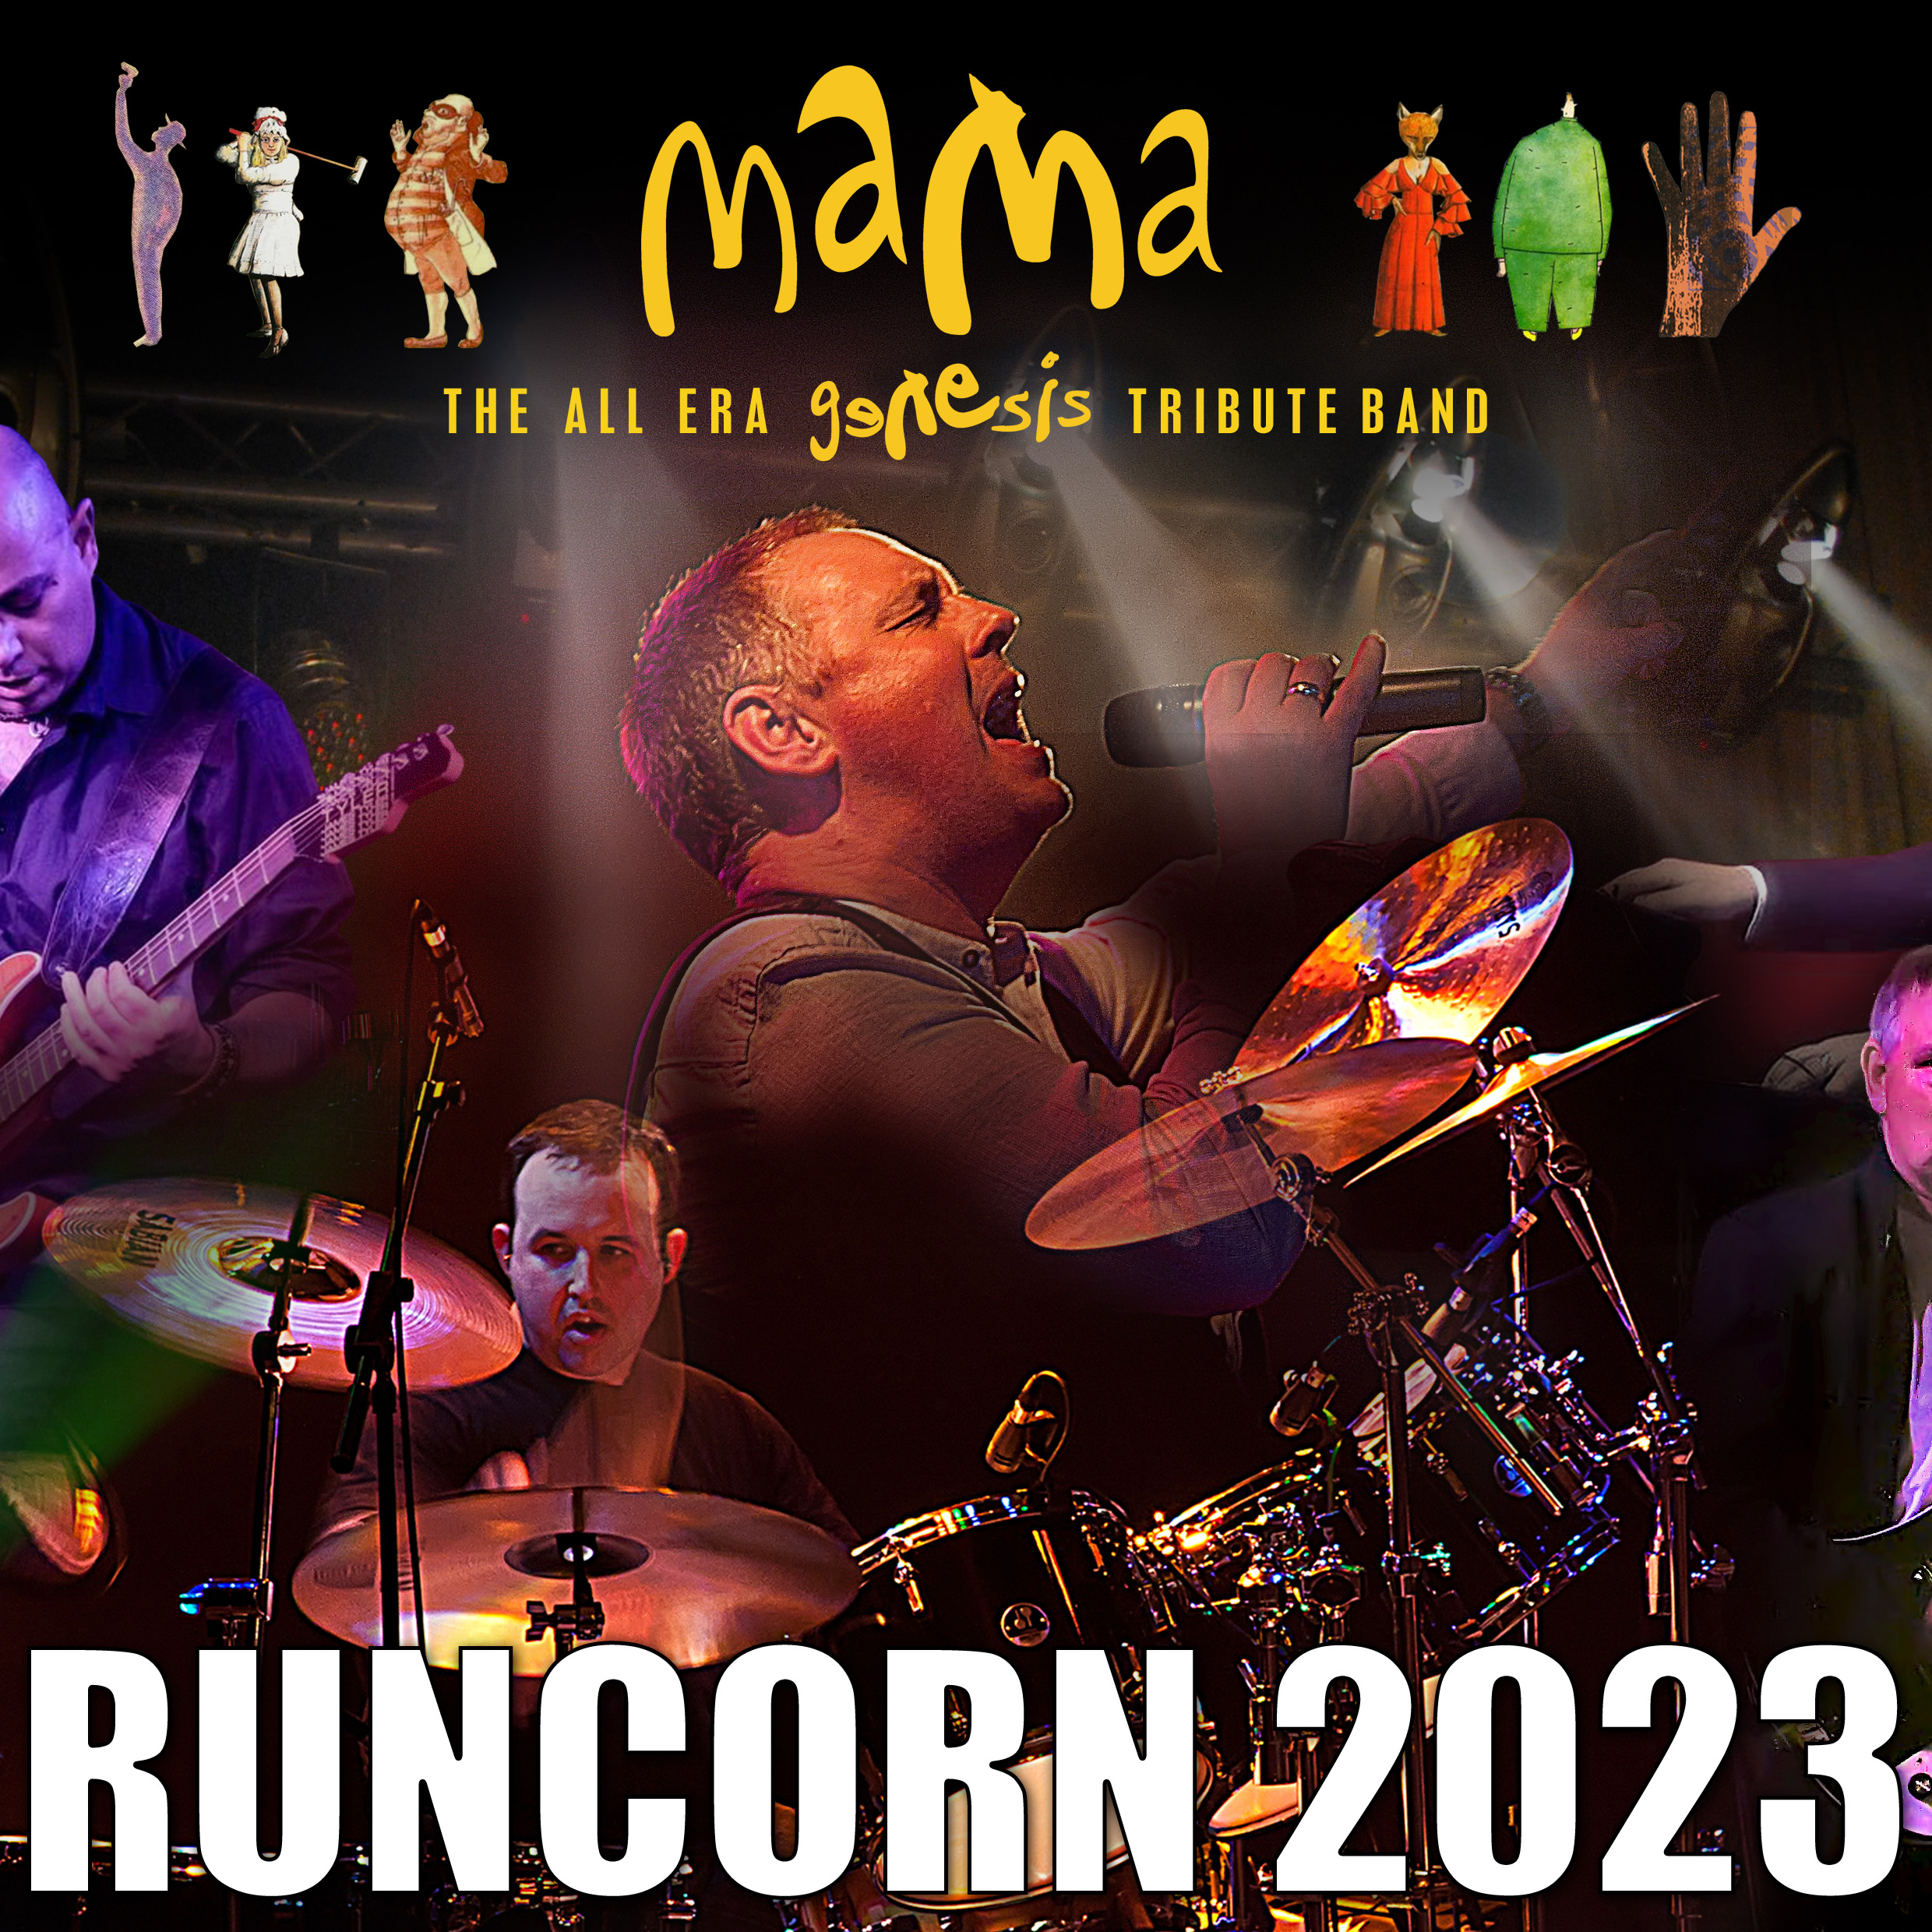 Runcorn 2023 square event listing